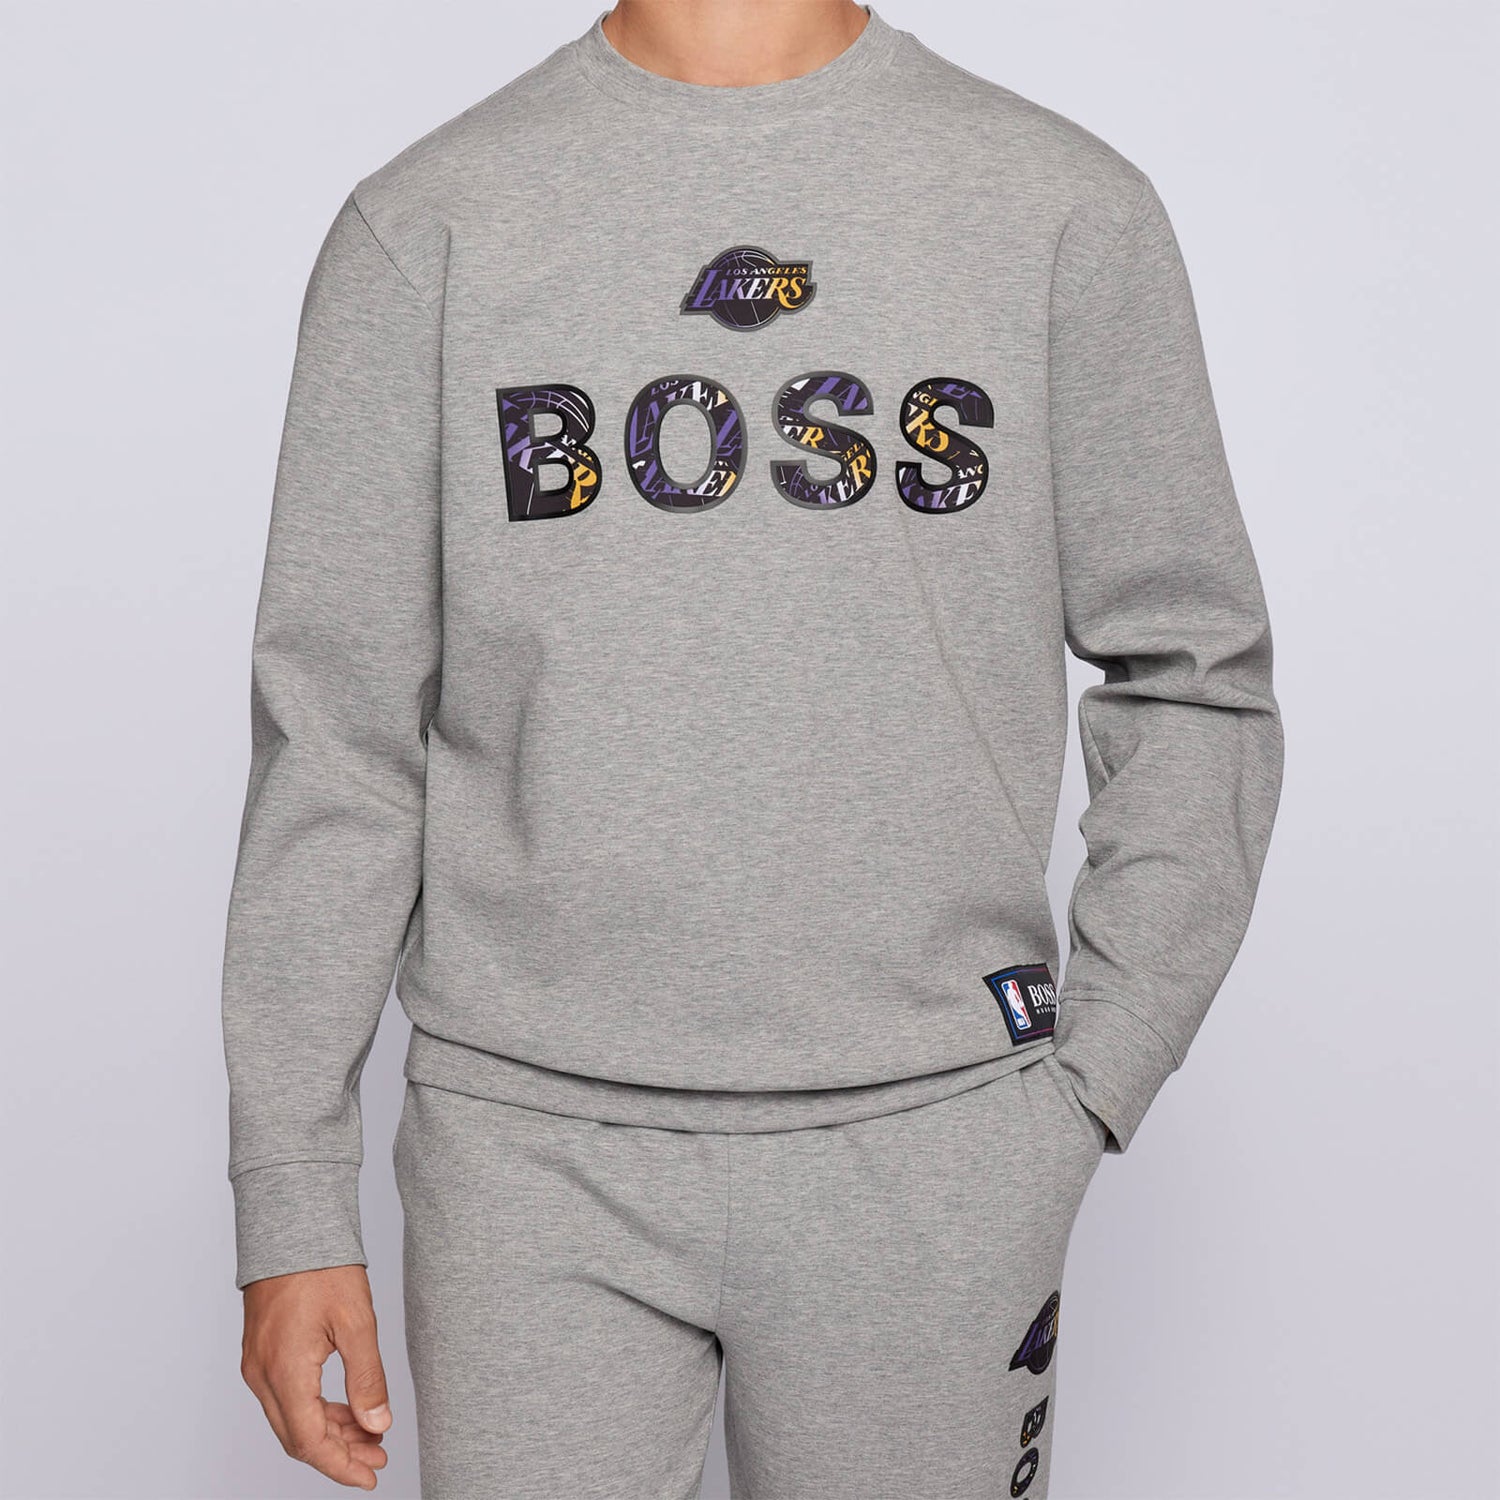 BOSS X NBA Men's Lakers Crewneck Sweatshirt - Medium Grey - M